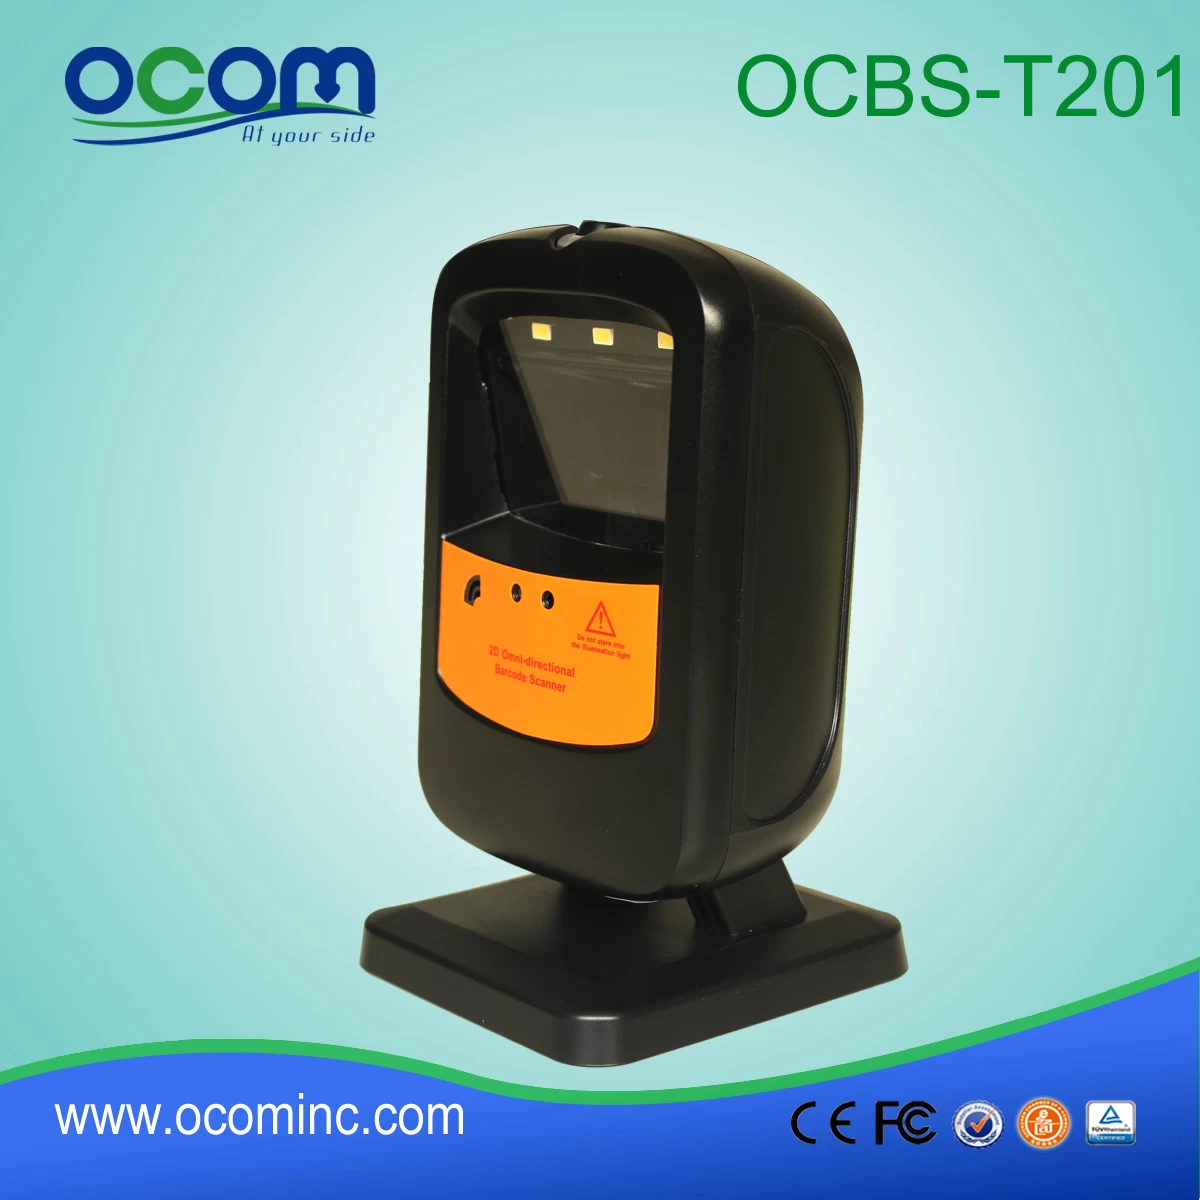 OCBS-T201 Desktop Omidirectional 2D Barcode Scanner